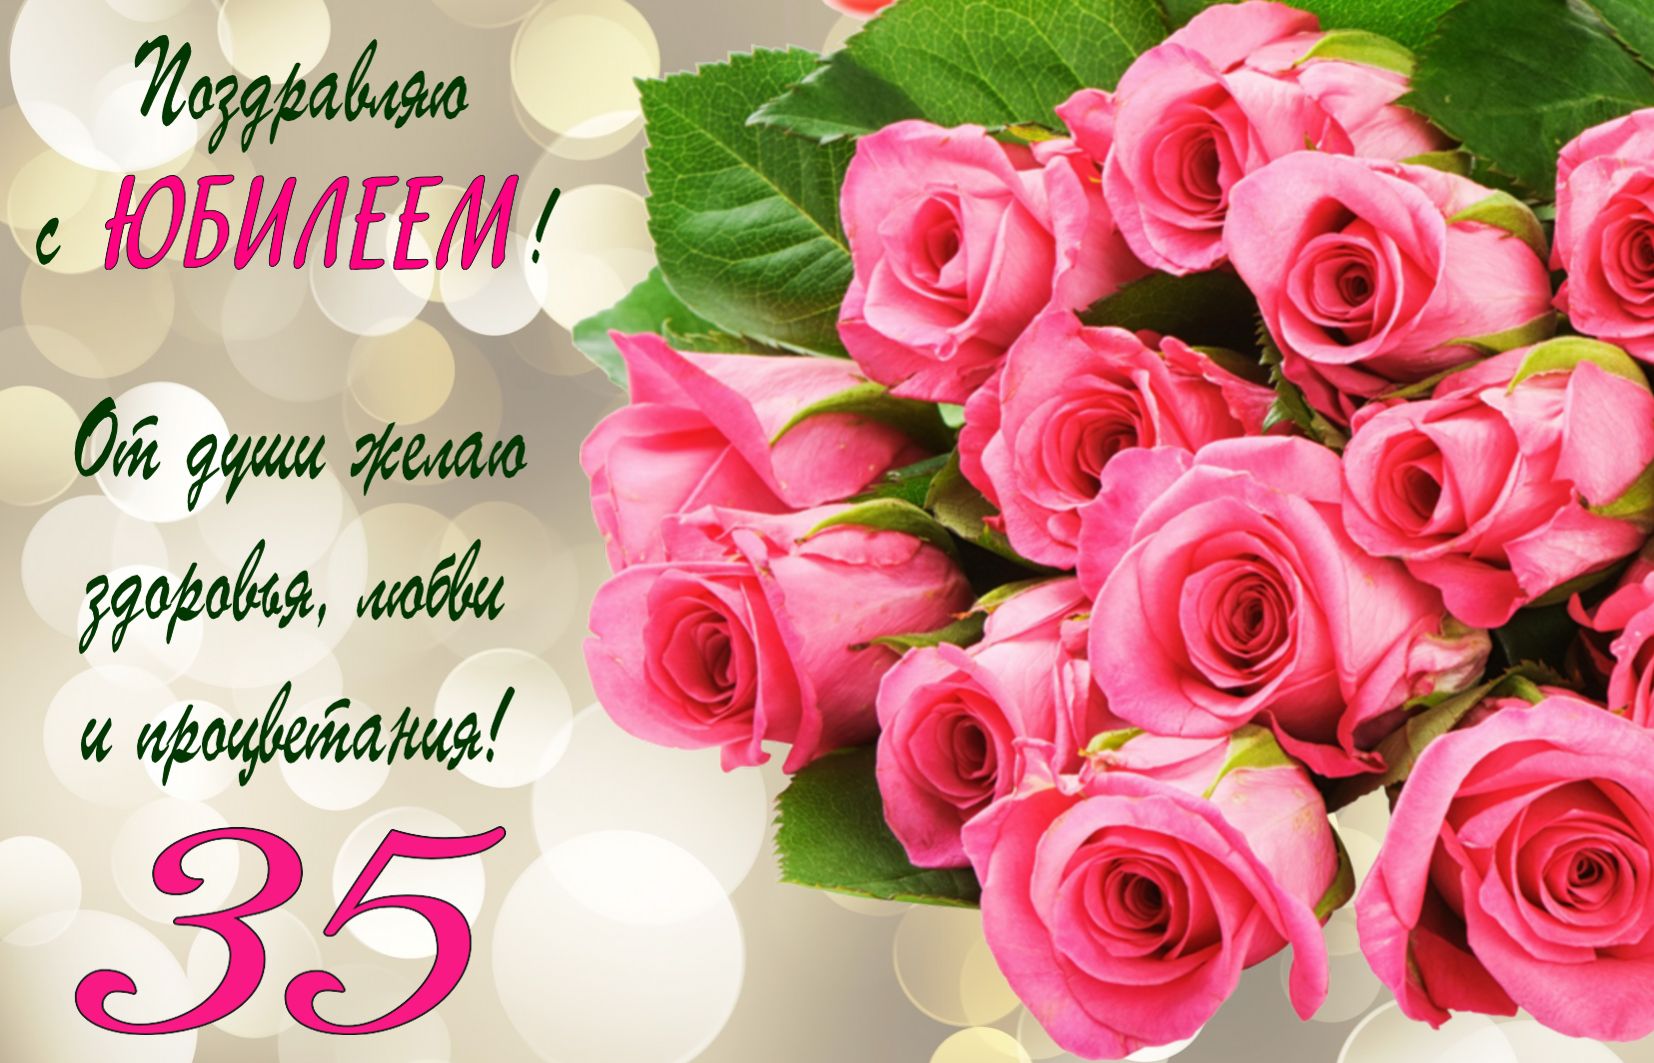 Поздравление на юбилей 35 лет с розовыми розами